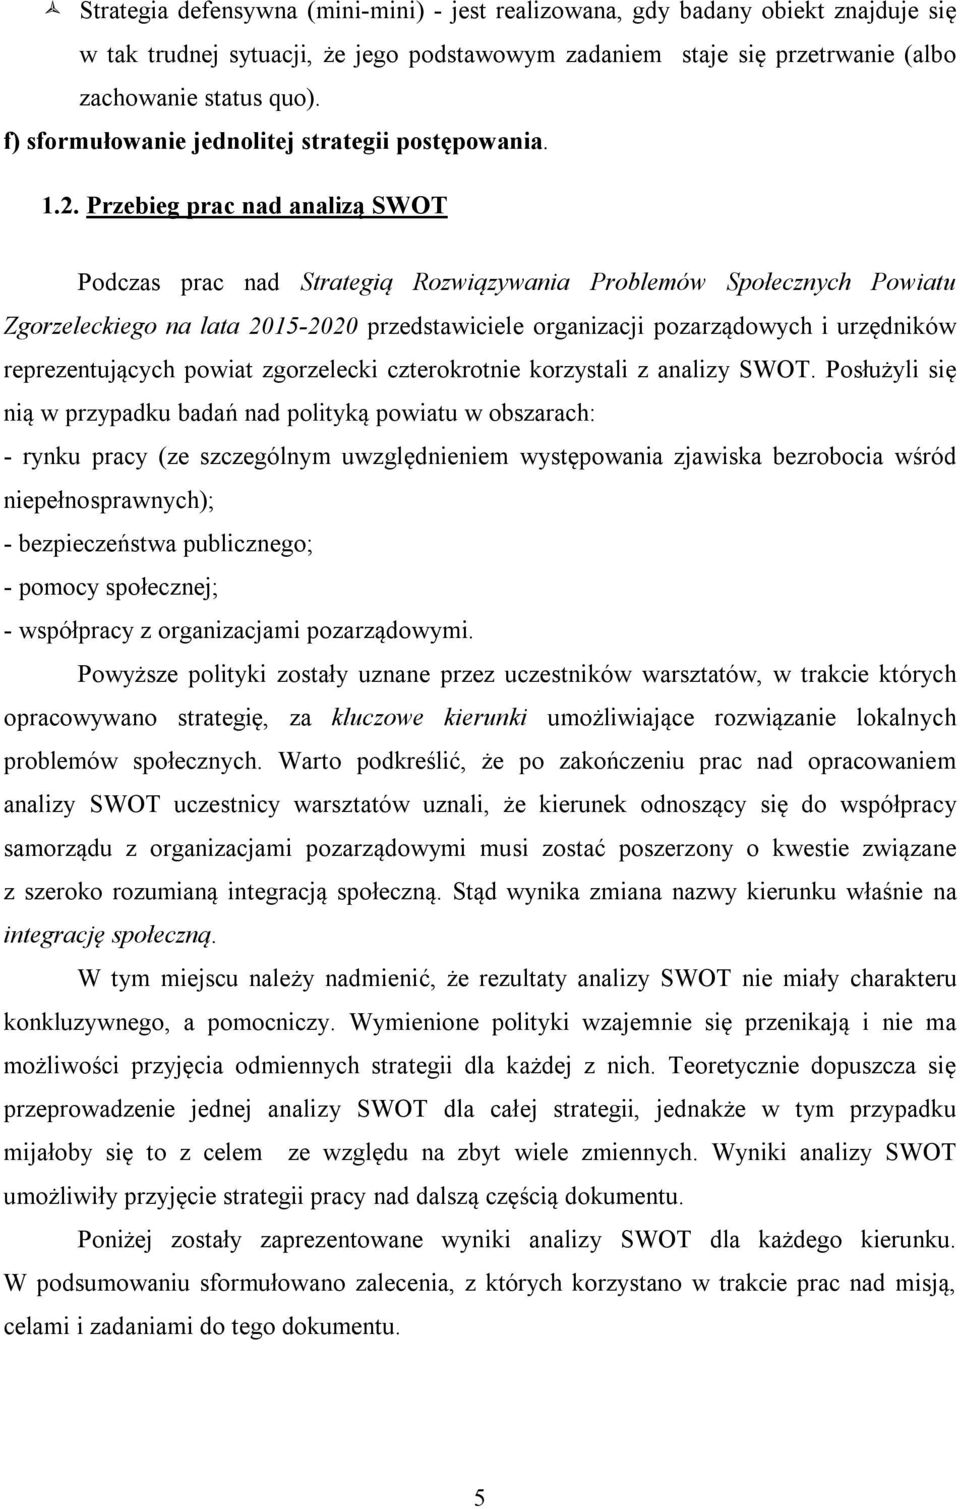 Przebieg prac nad analizą SWOT Podczas prac nad Strategią Rozwiązywania Problemów Społecznych Powiatu Zgorzeleckiego na lata 2015-2020 przedstawiciele organizacji pozarządowych i urzędników